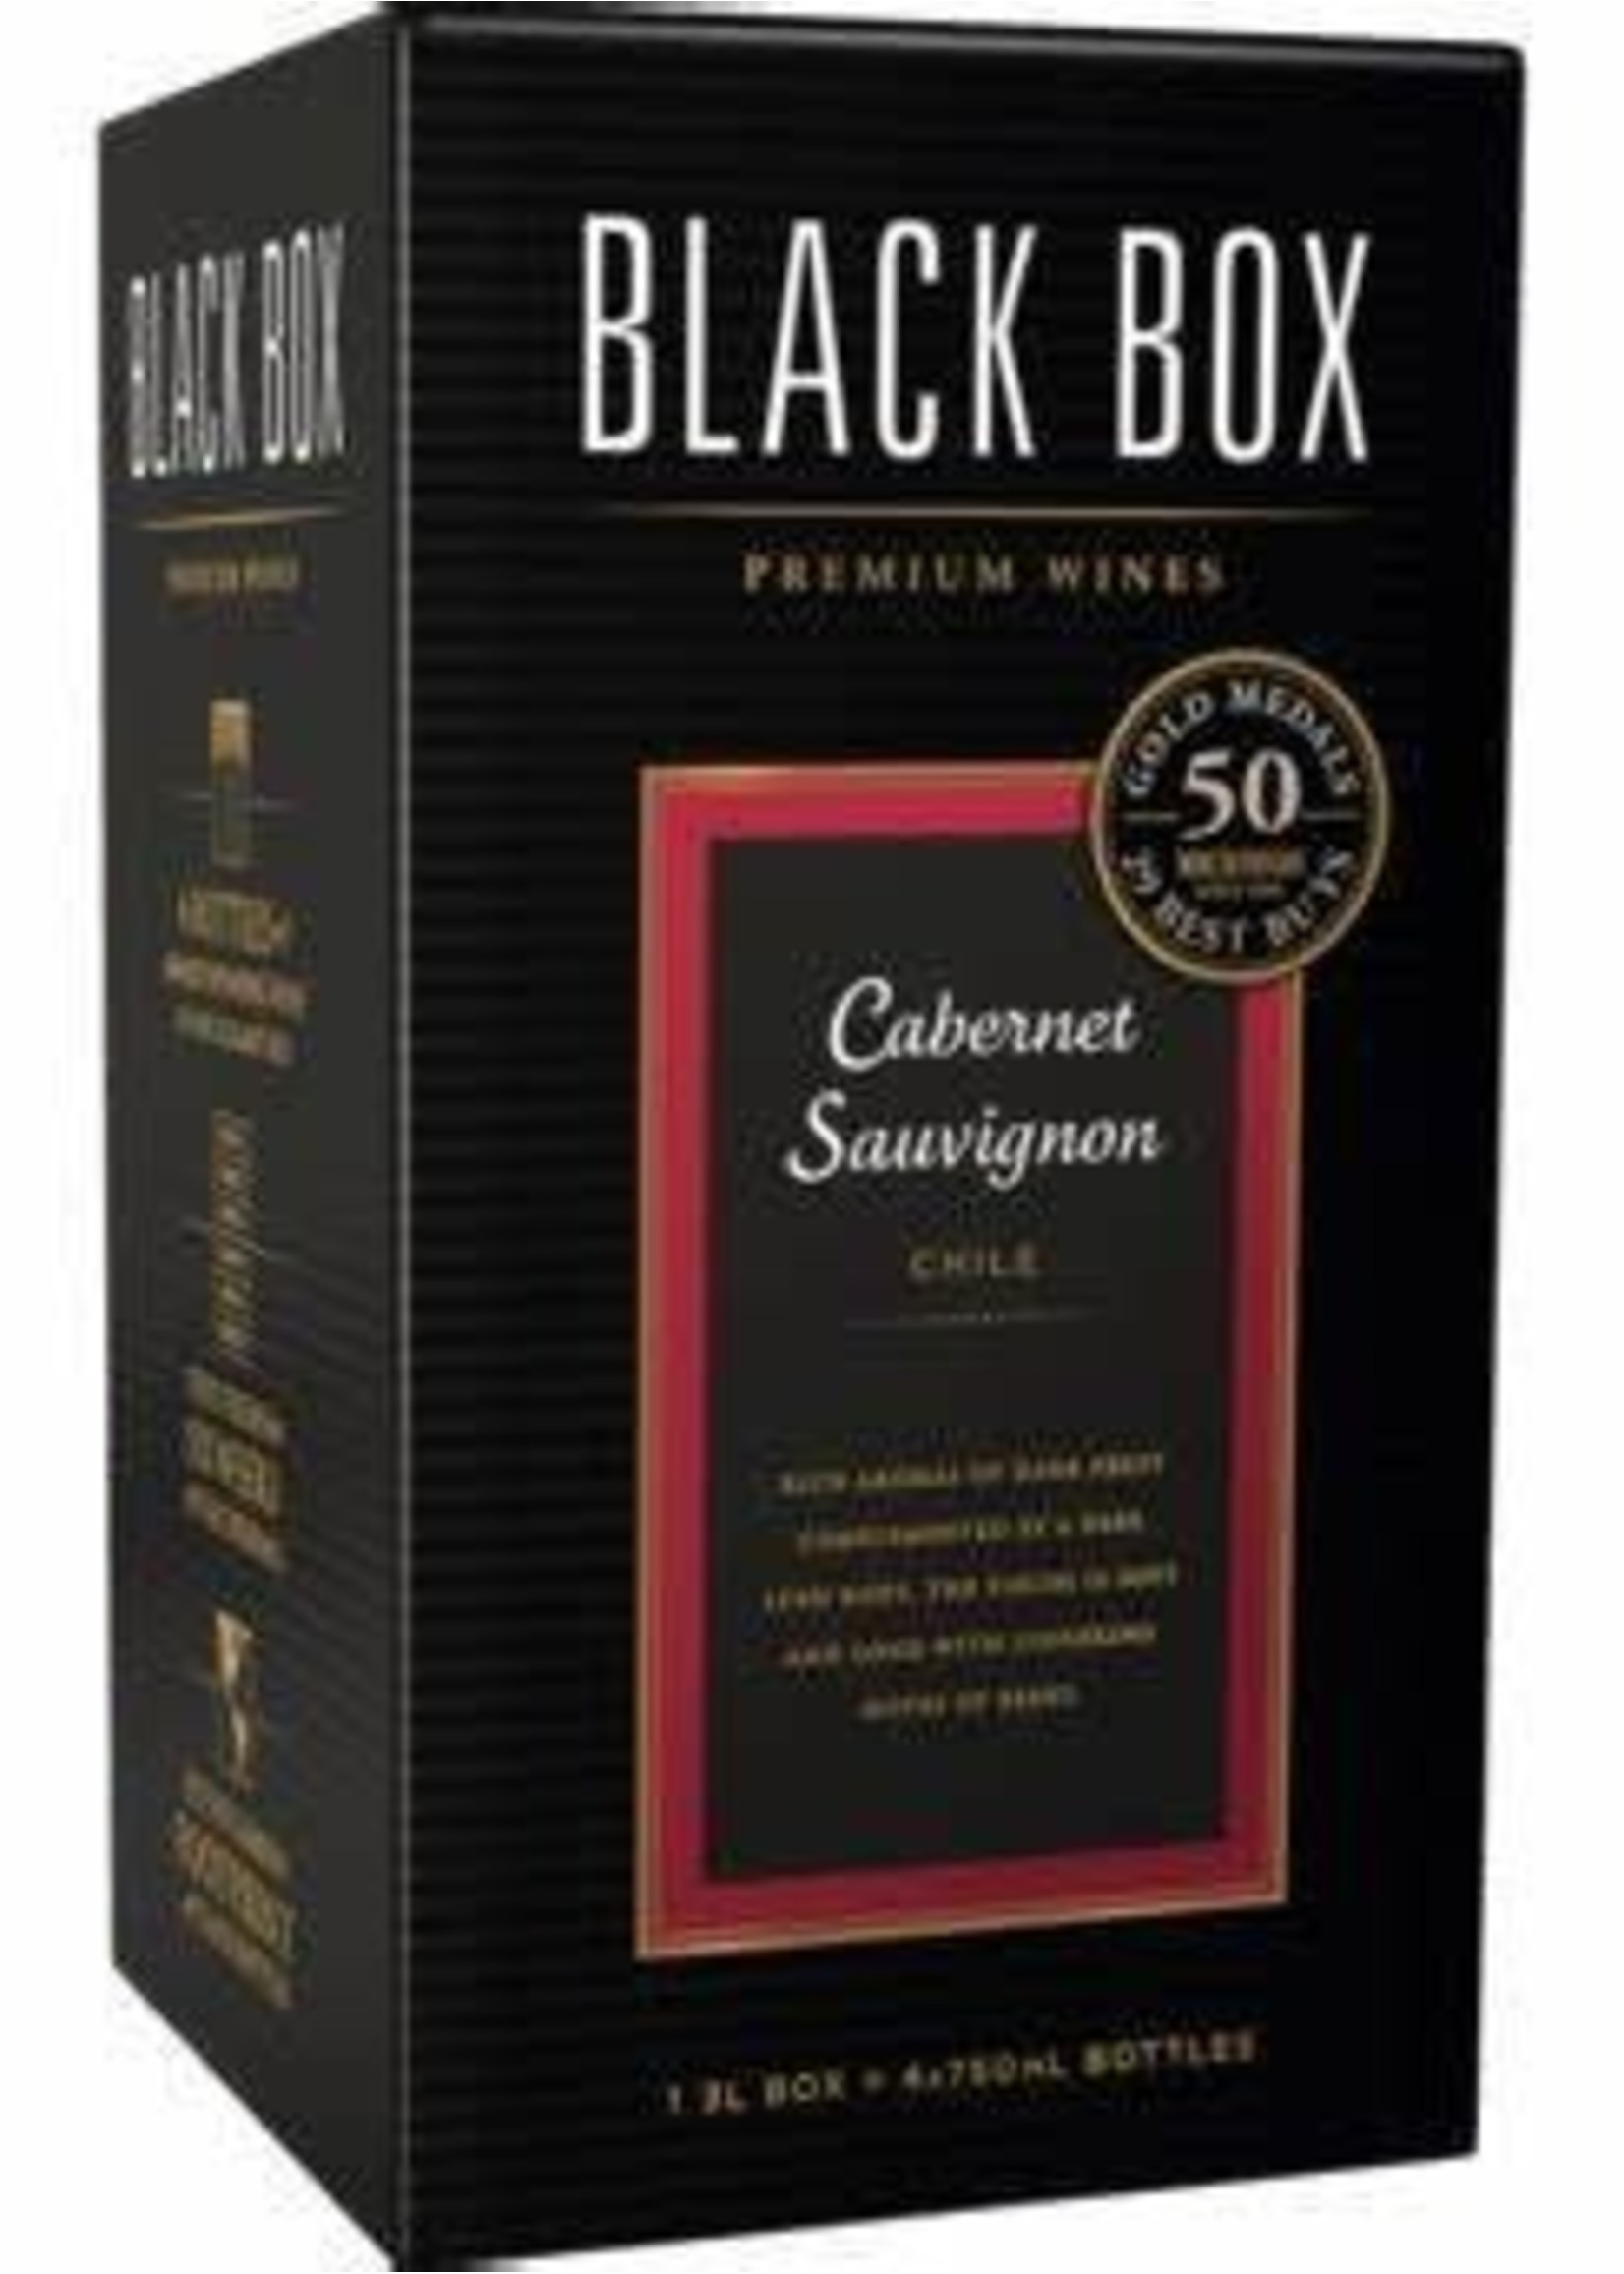 Black Box Black Box / Cabernet Sauvignon